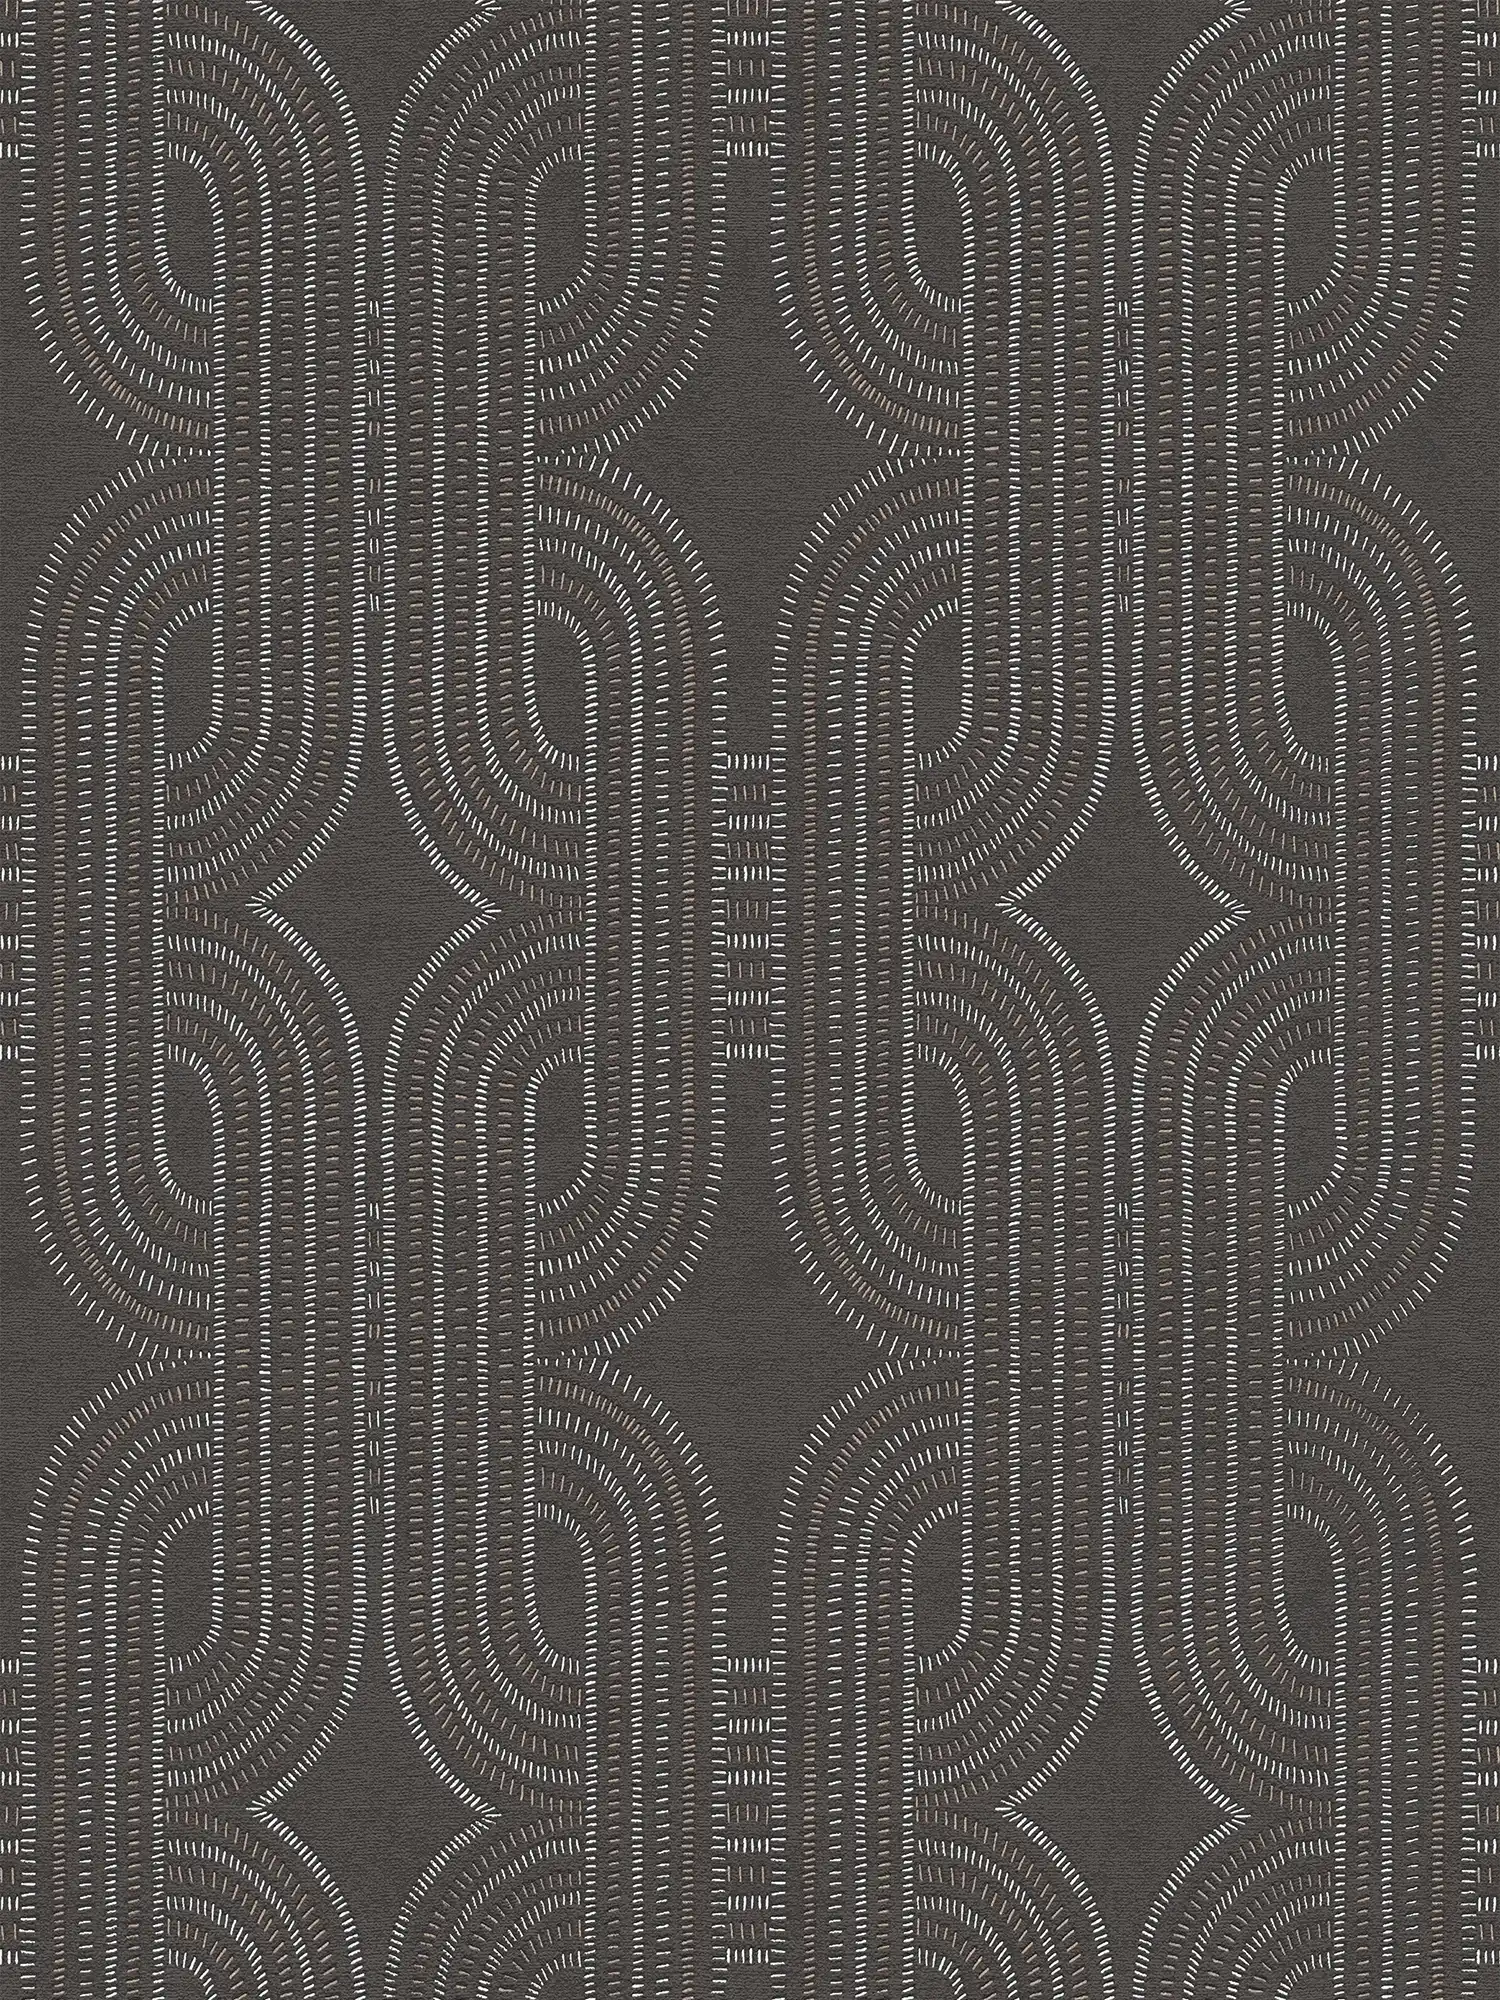 Vliesbehang met abstract grafisch retro patroon - zwart, bruin, metallic
